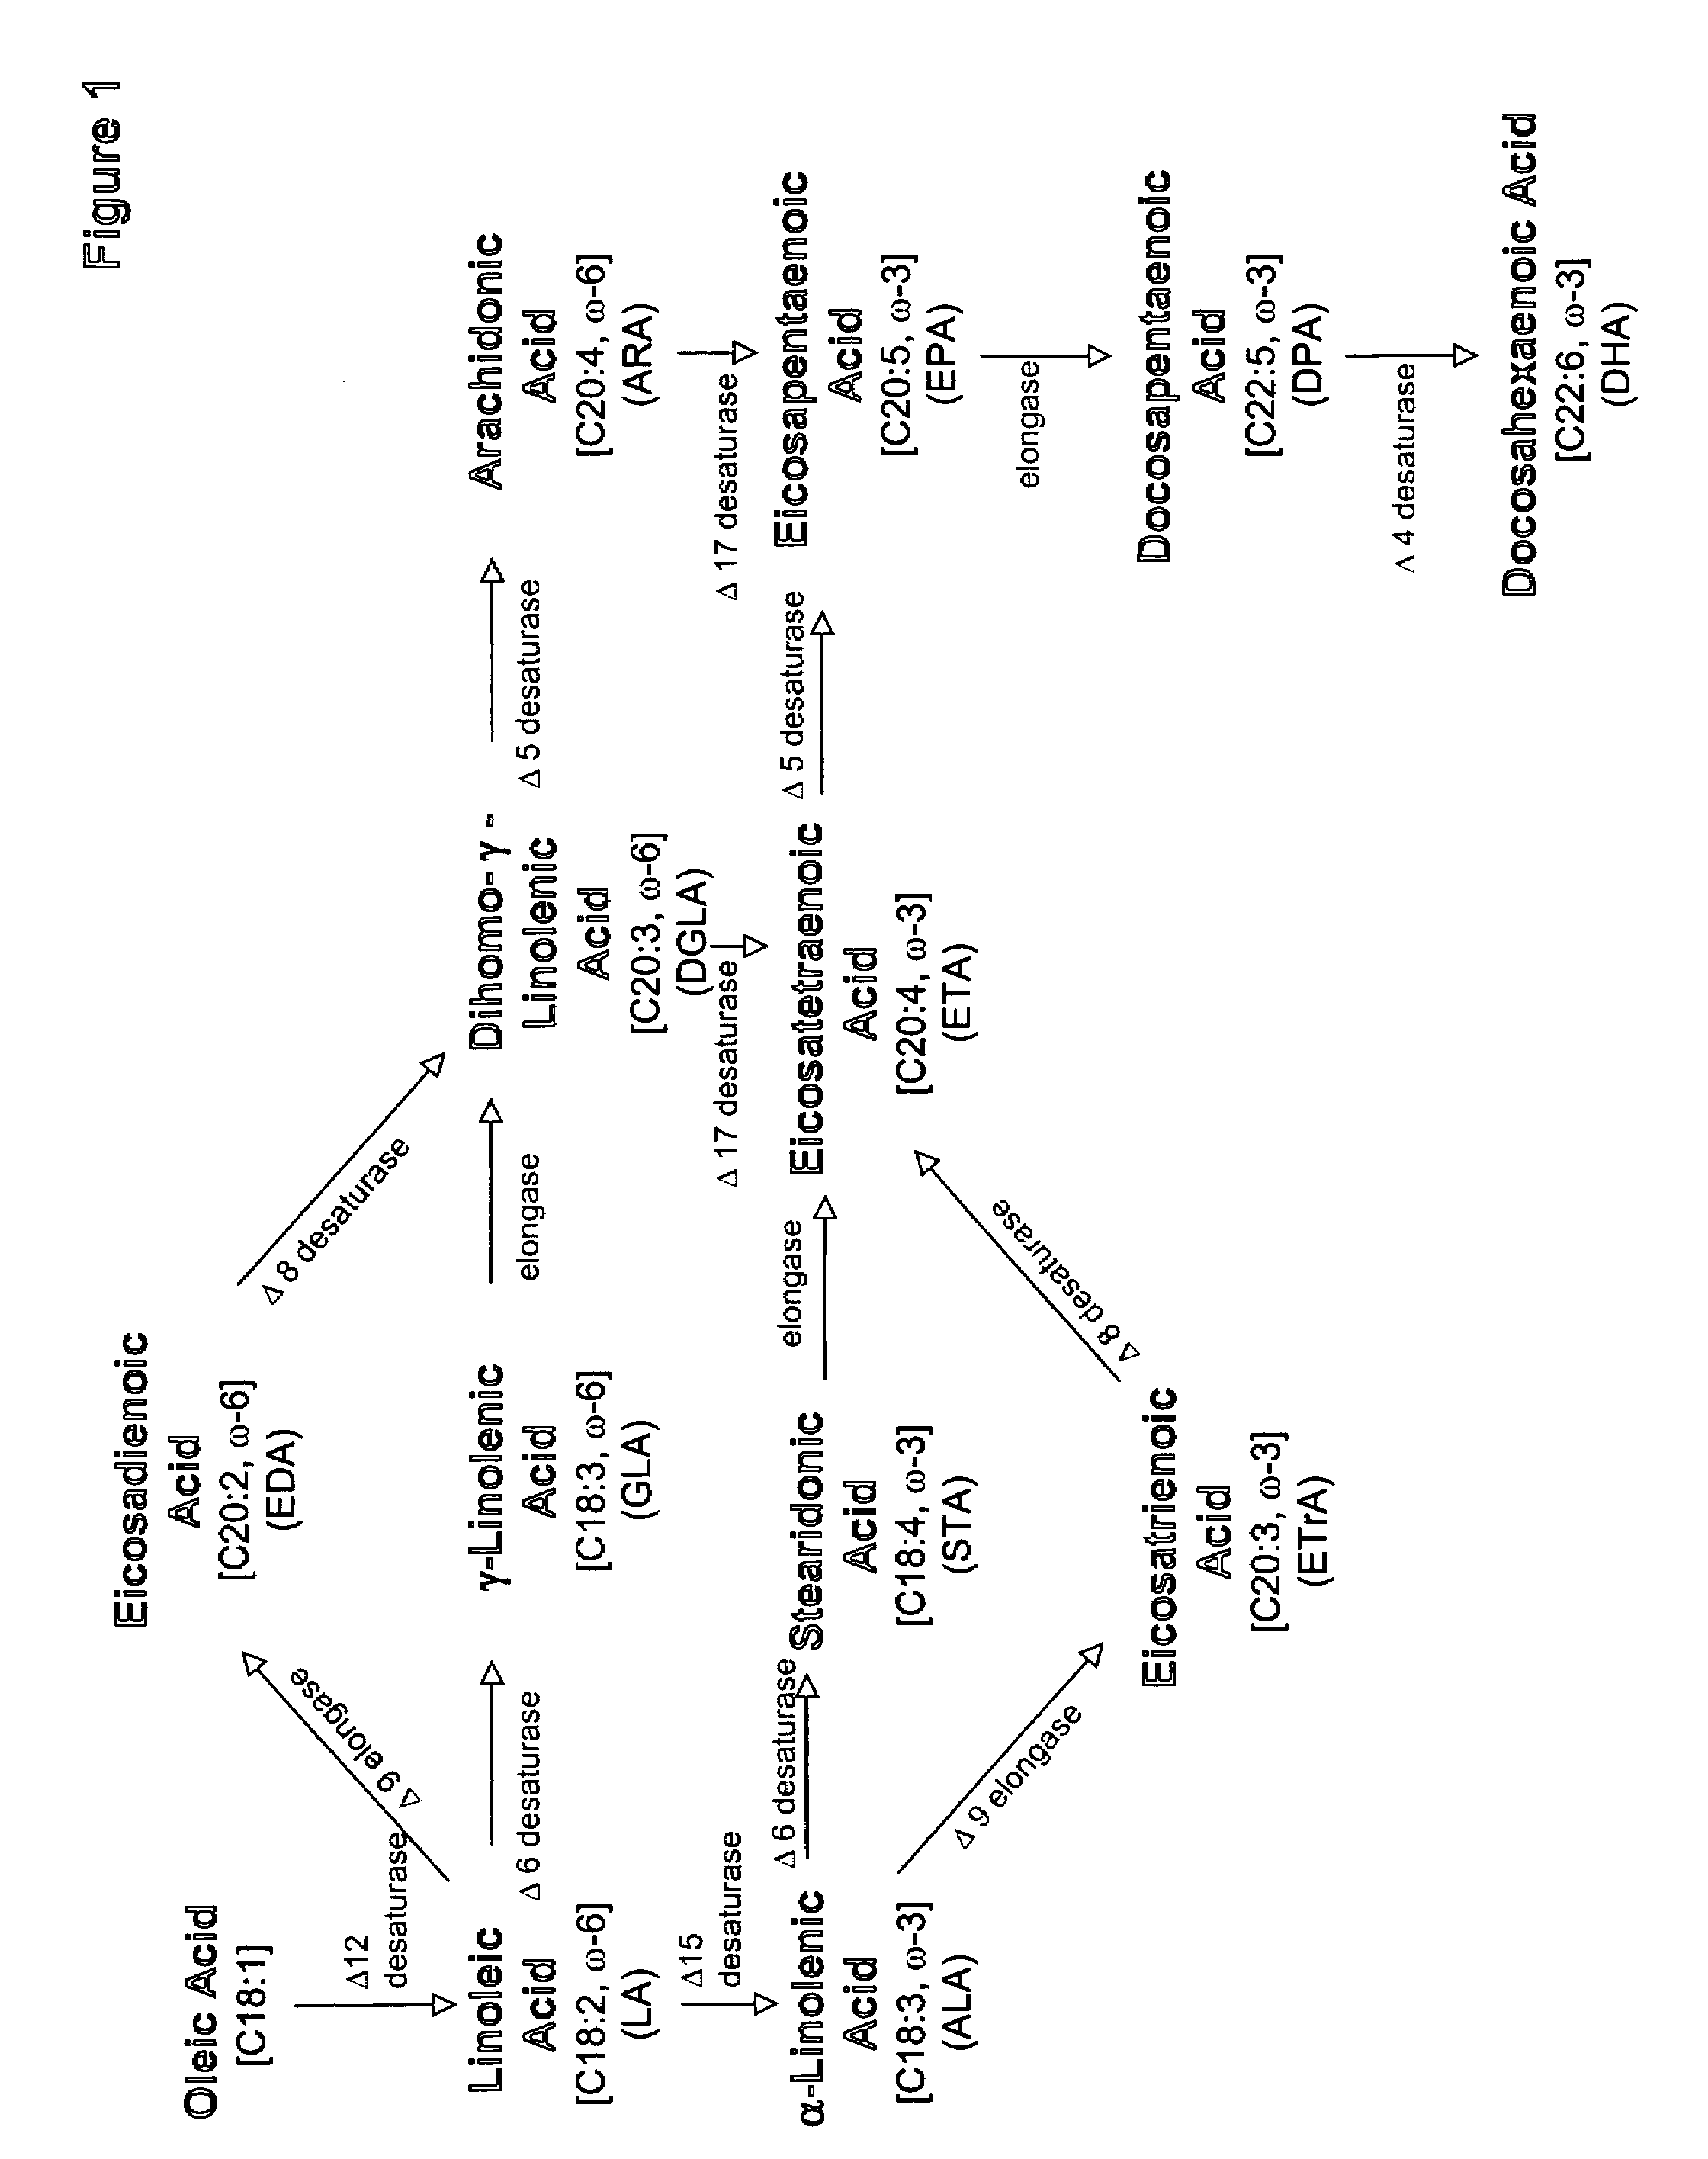 Production of gamma-linolenic acid in oleaginous yeast